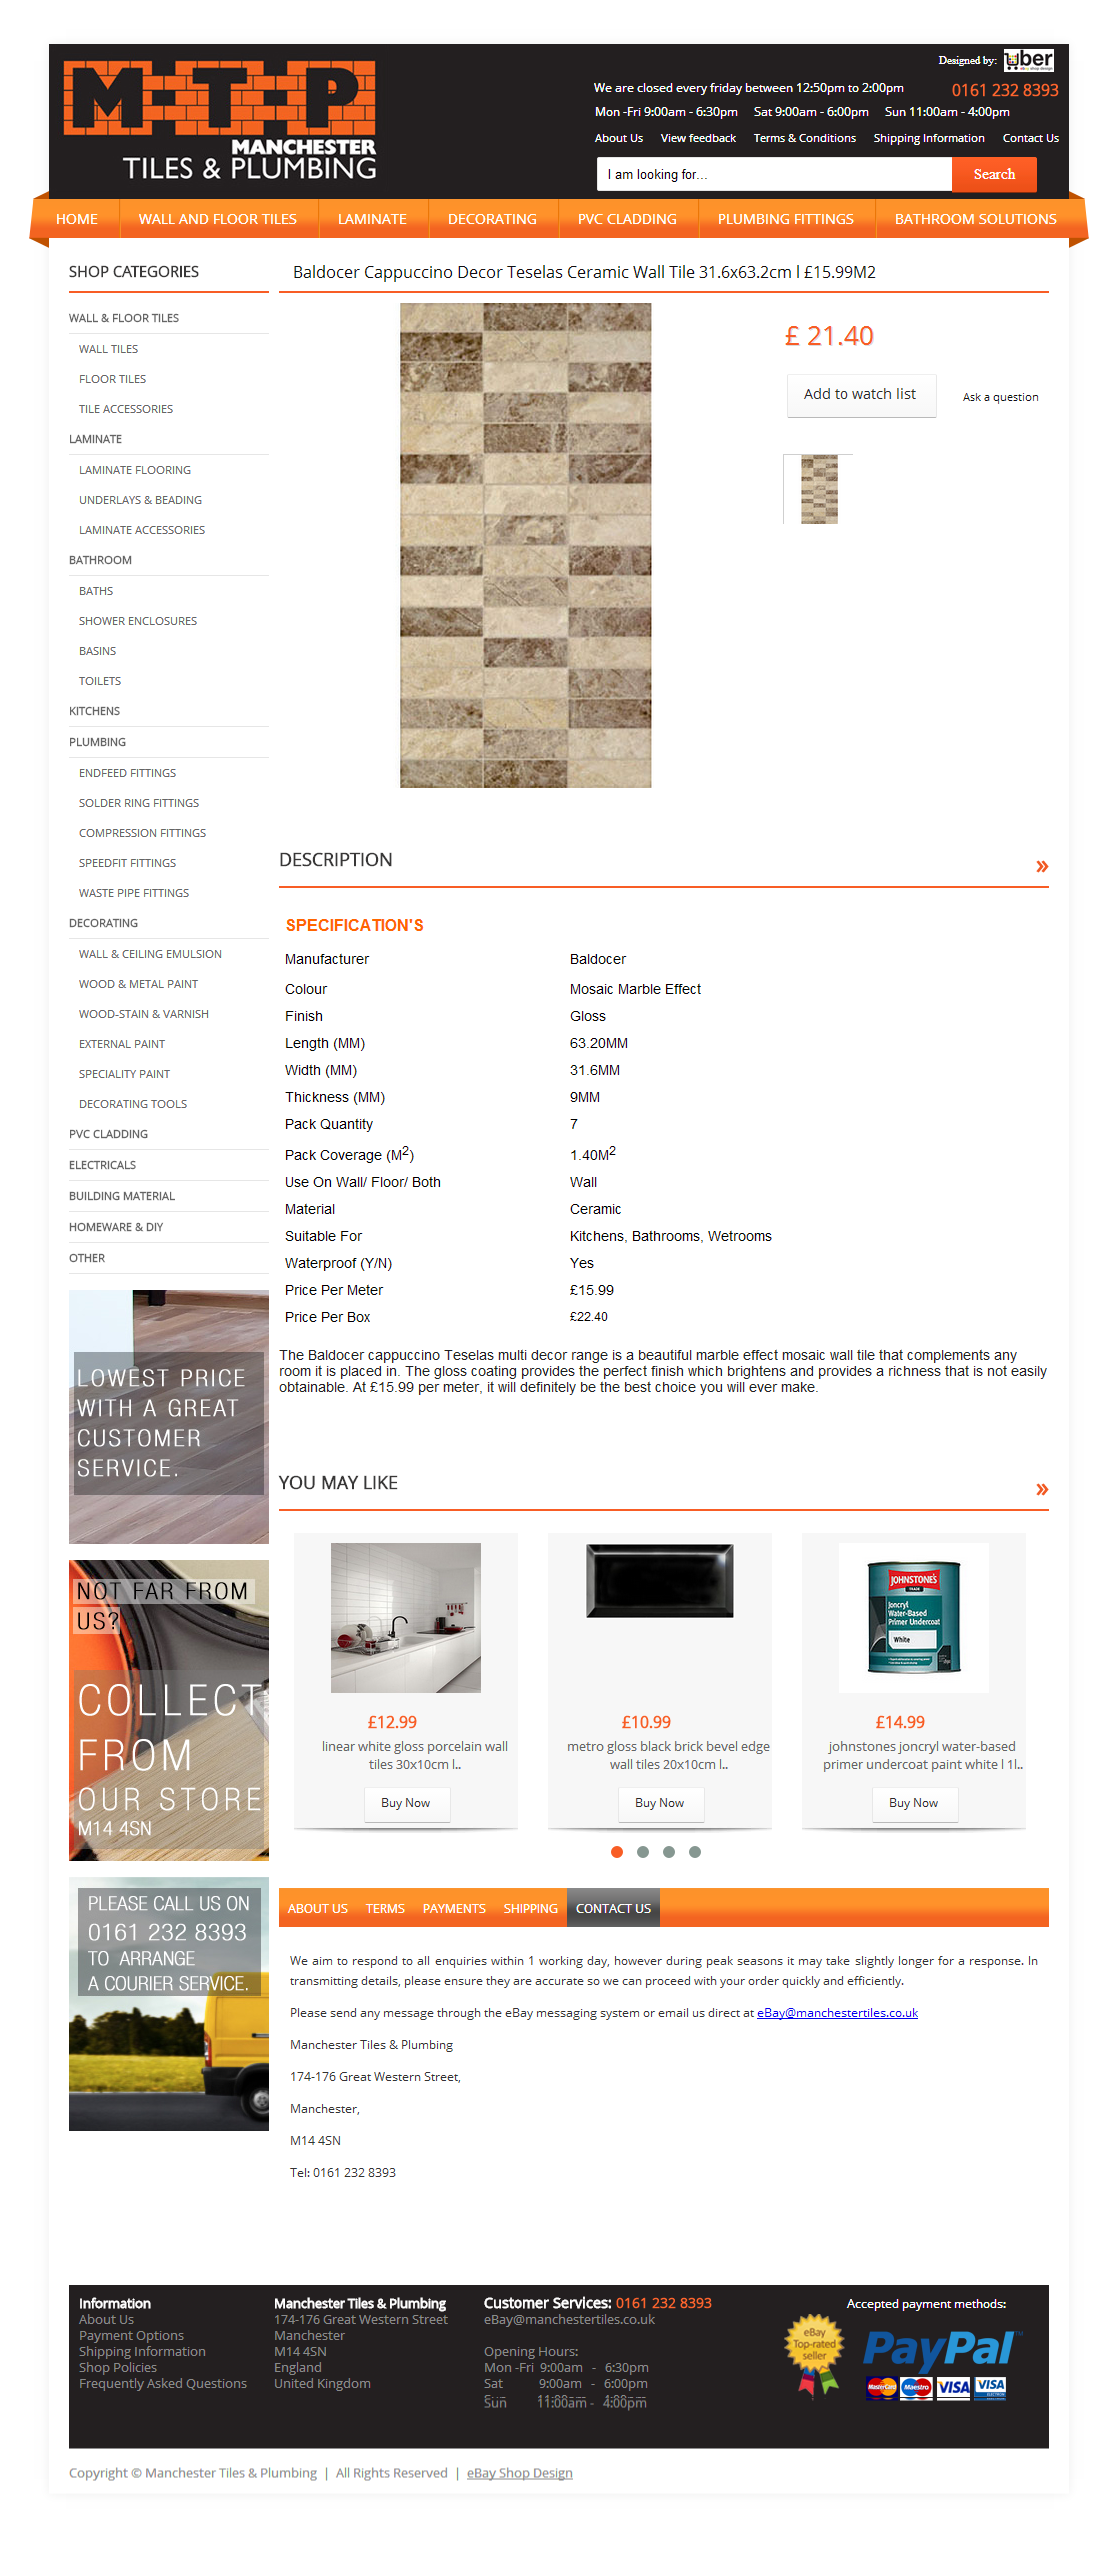 Manchester tiles ebay item page design